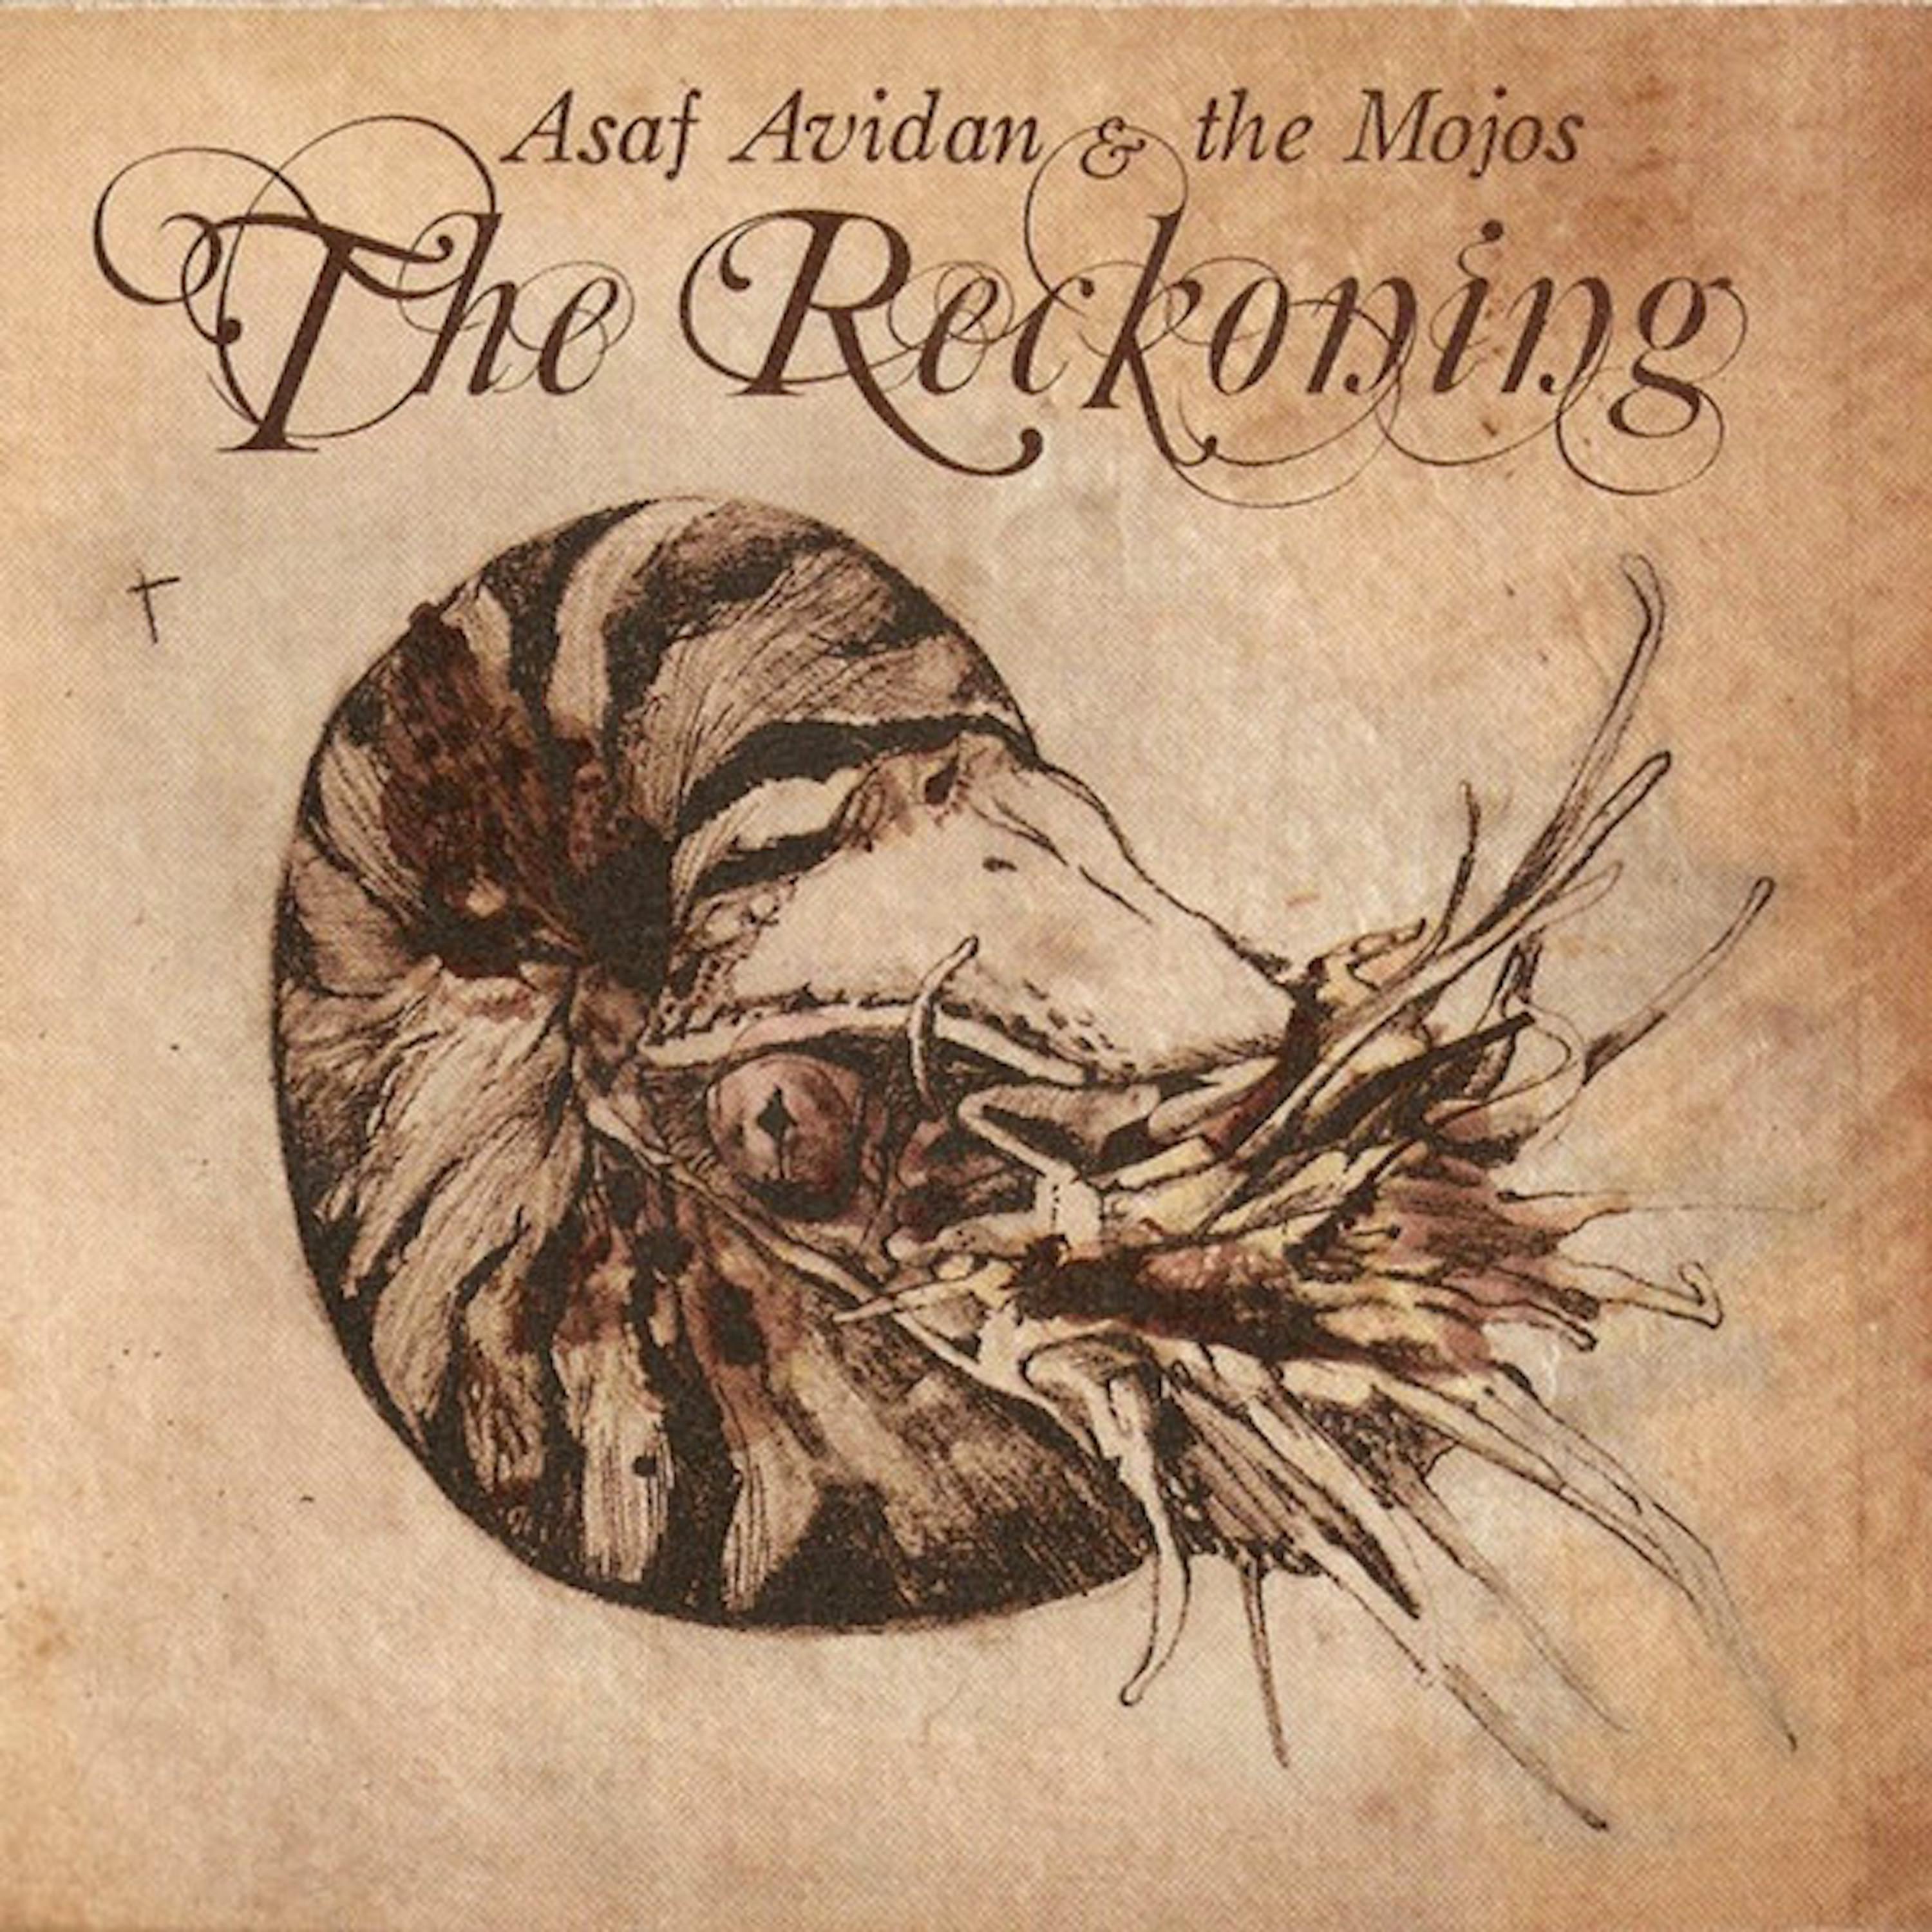 Asaf Avidan - Reckoning Song